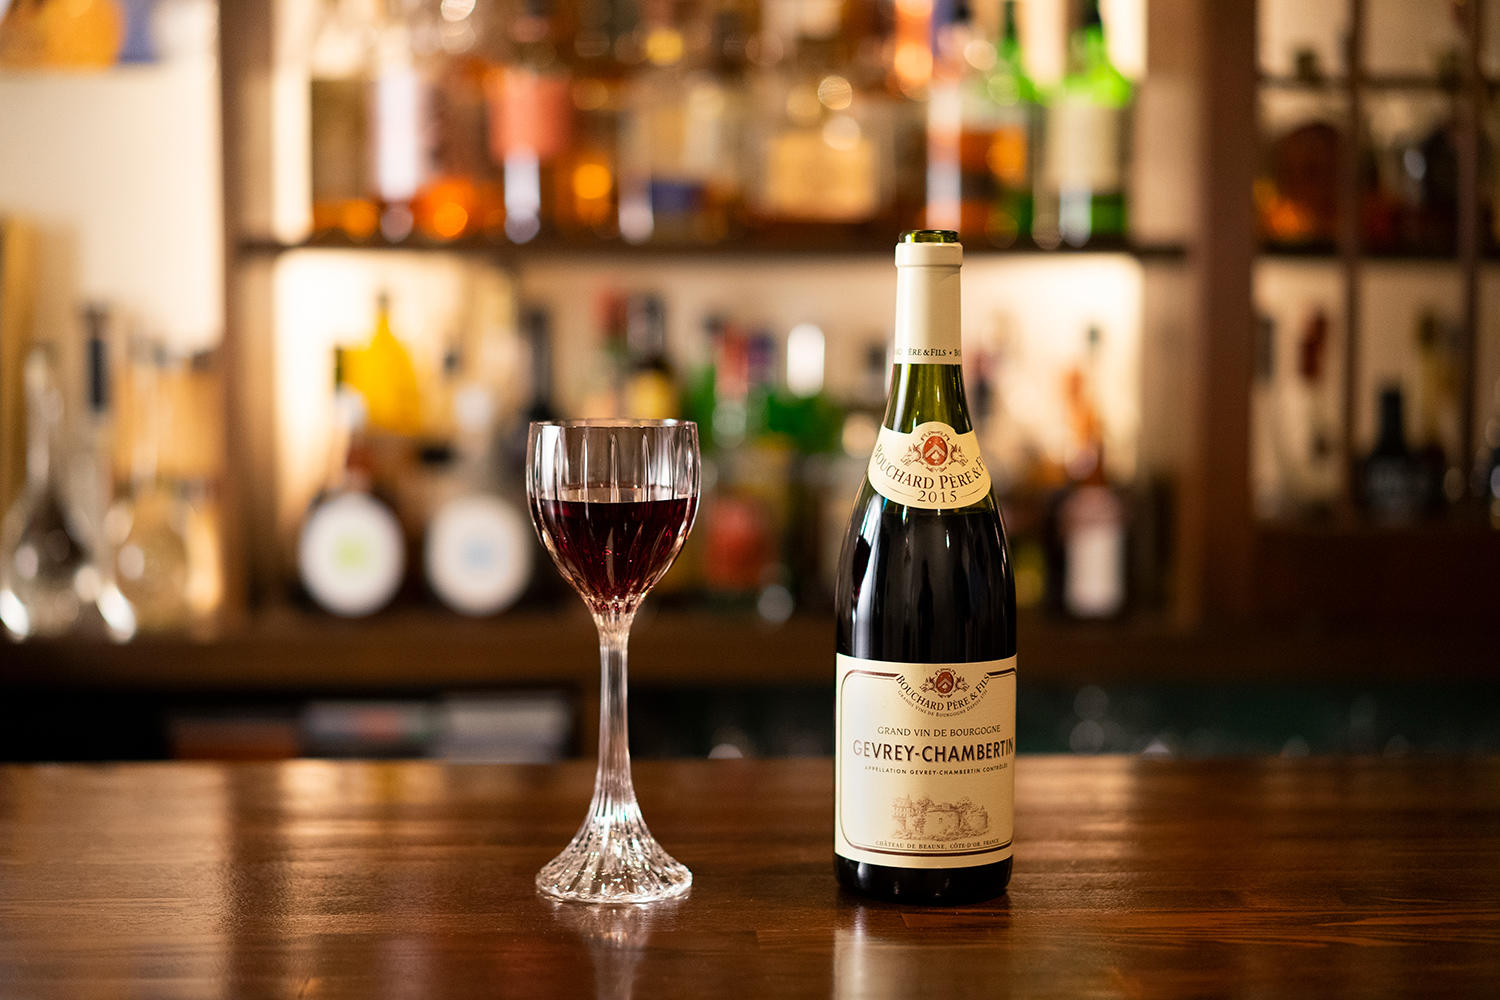 ナポレオンが遠征に持参したワインと血の味～吉村喜彦のin vino veritas